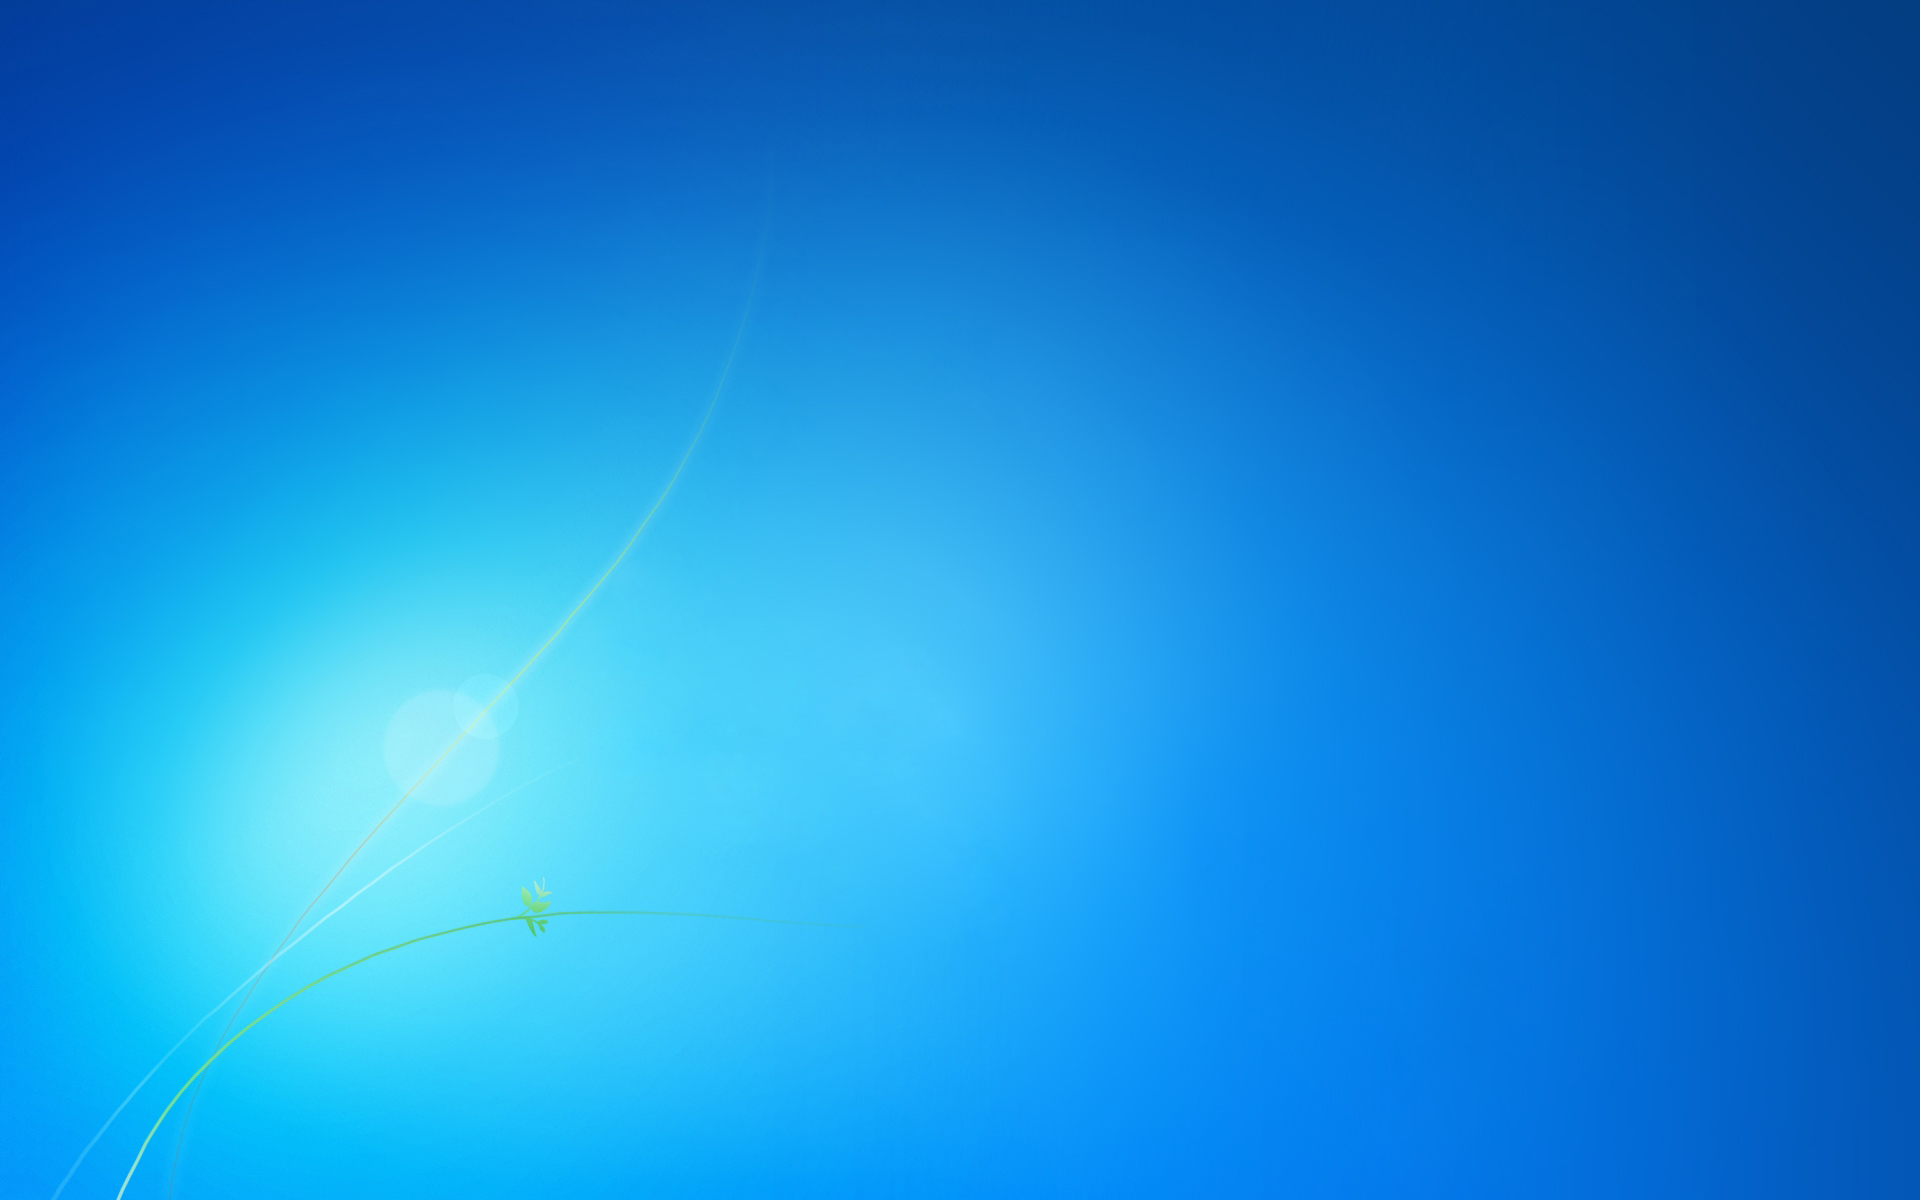 Với gam màu xanh da trời thanh thoát, hình nền Windows 7 trên trang WallpaperSafari sẽ làm cho màn hình của bạn trở nên sắc nét và hoàn hảo hơn bao giờ hết. Hãy chọn ngay cho mình những bức tranh tuyệt đẹp này để trang trí cho dế yêu của bạn khỏi bị nhàm chán.